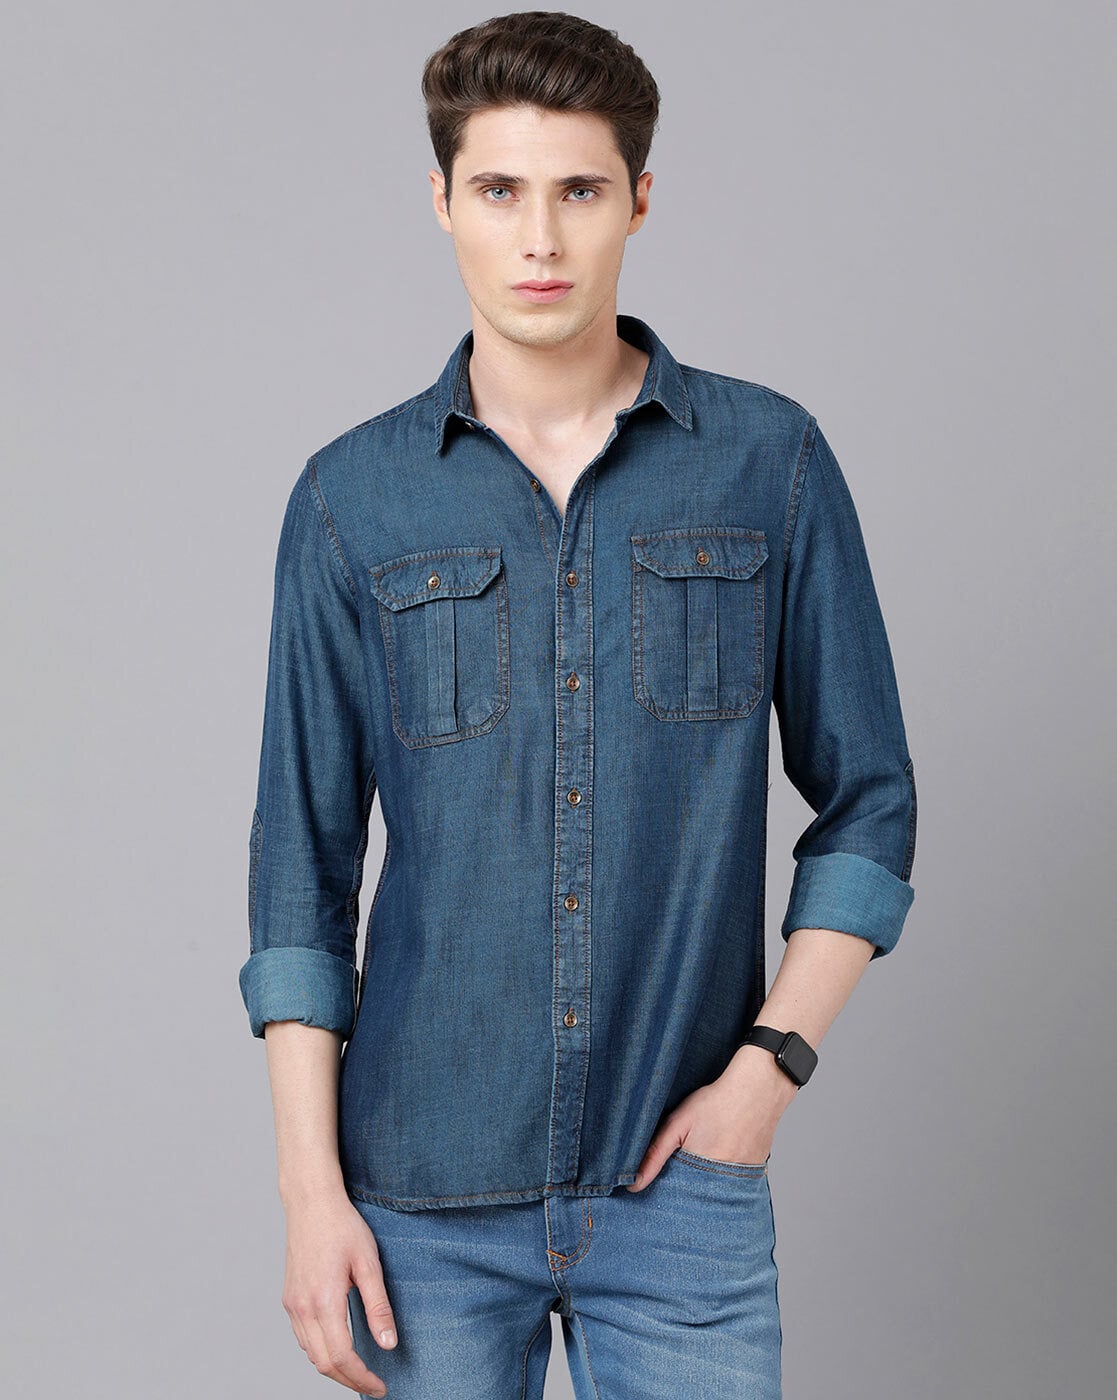 Buy Navy Blue Shirts for Men by VAN HEUSEN Online | Ajio.com